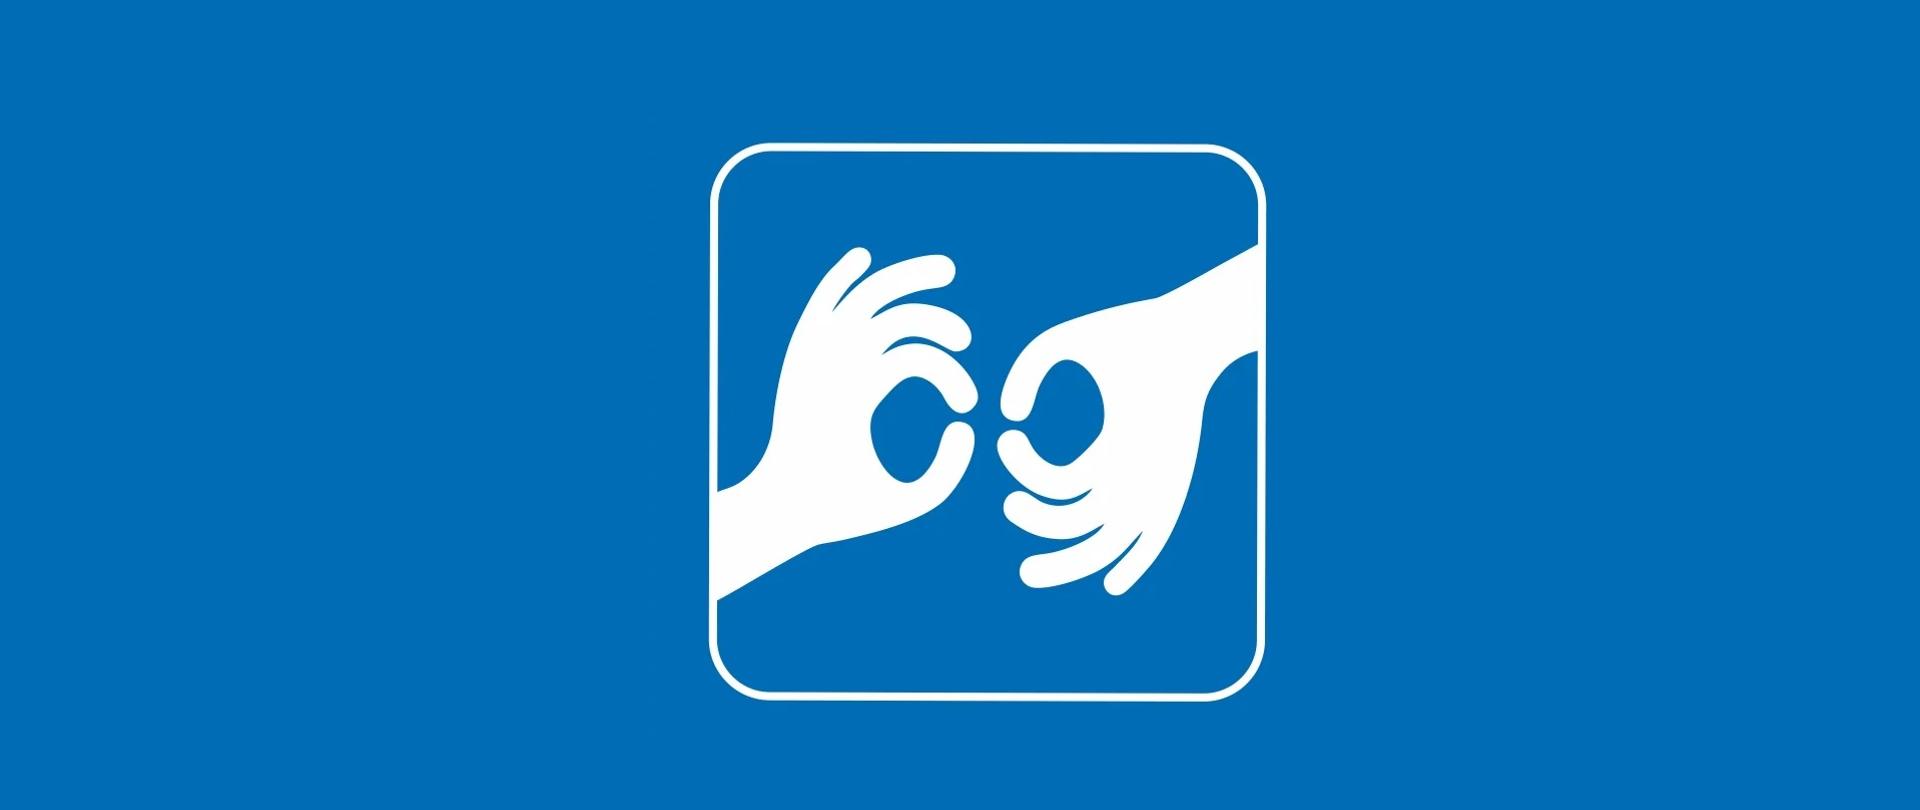 Dwie ręce w geście rozmowy w języku migowym na niebieskim tle